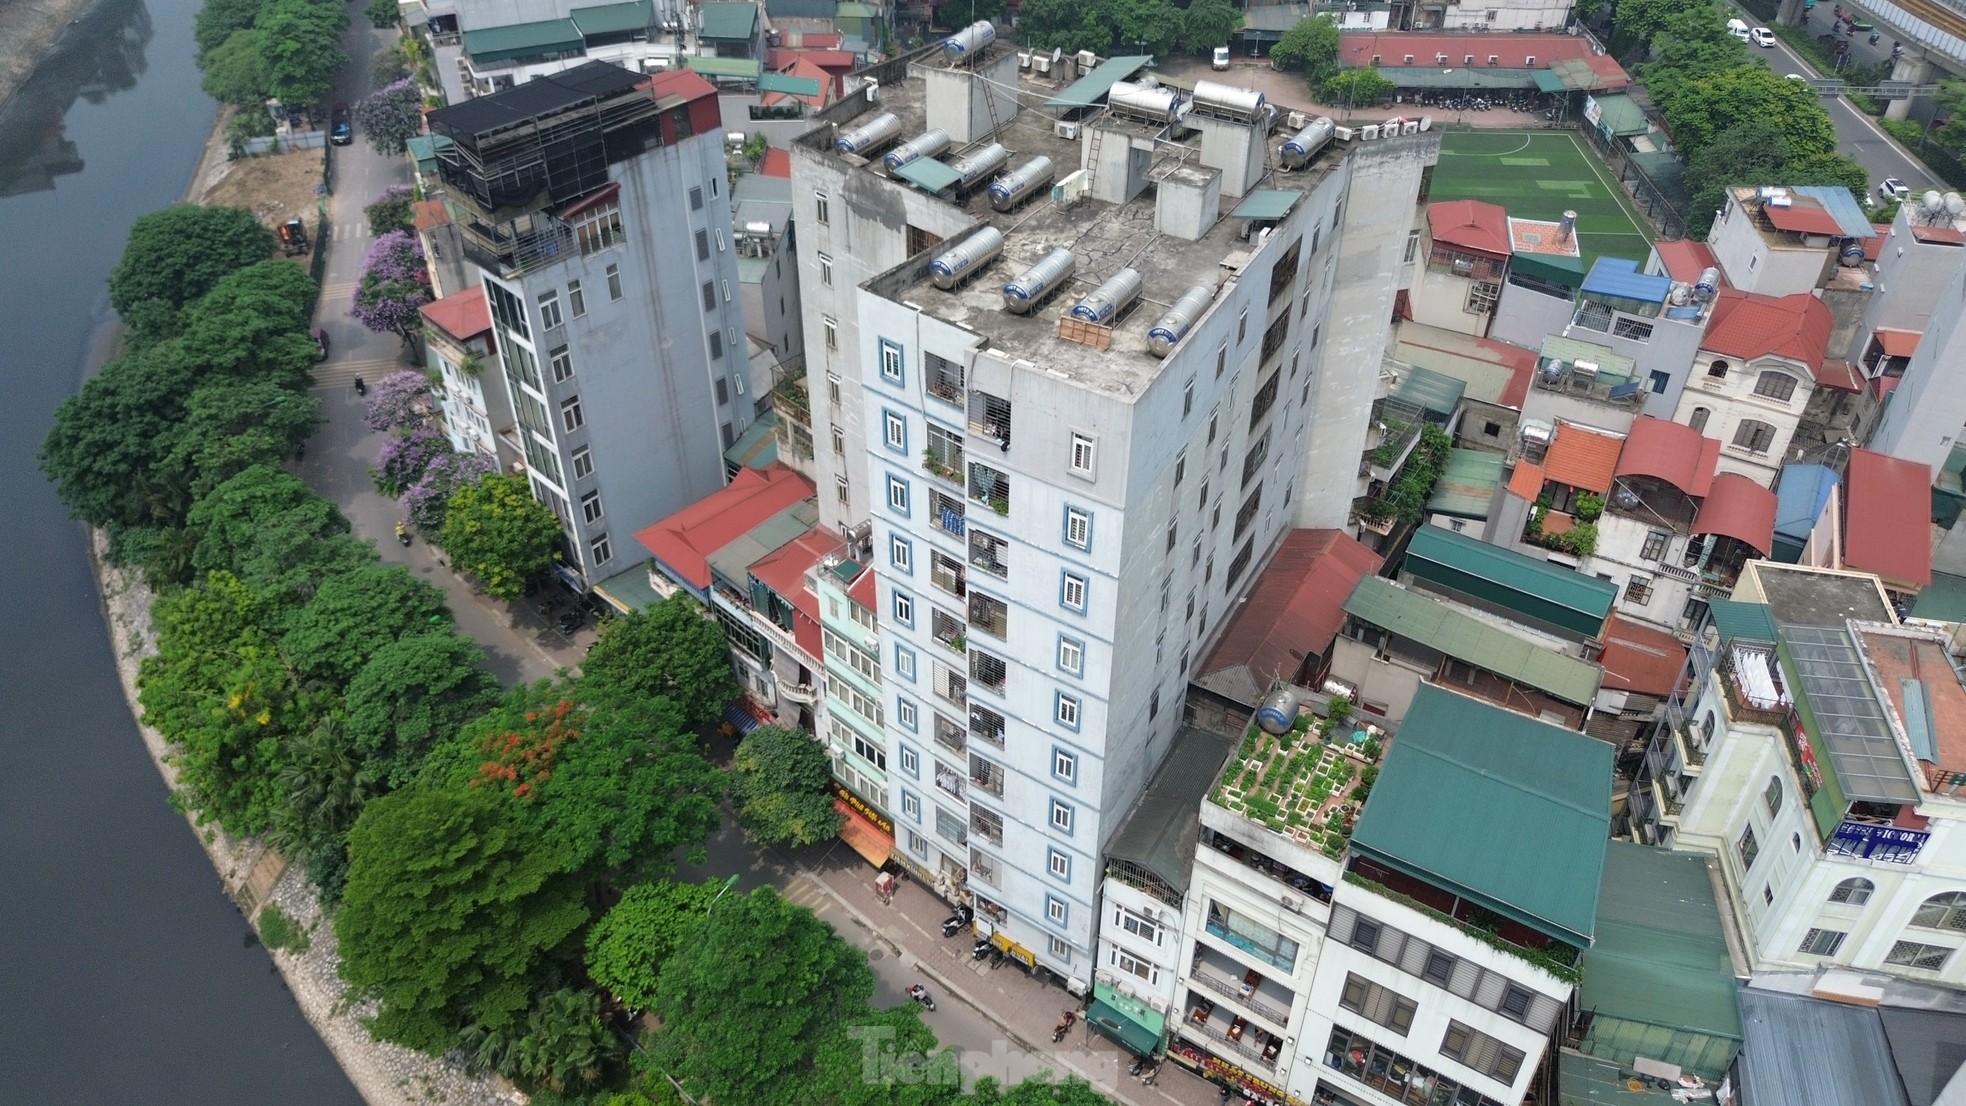 Nhà trọ, chung cư mini tràn lan không đảm bảo phòng cháy chữa cháy ở Hà Nội - Ảnh 12